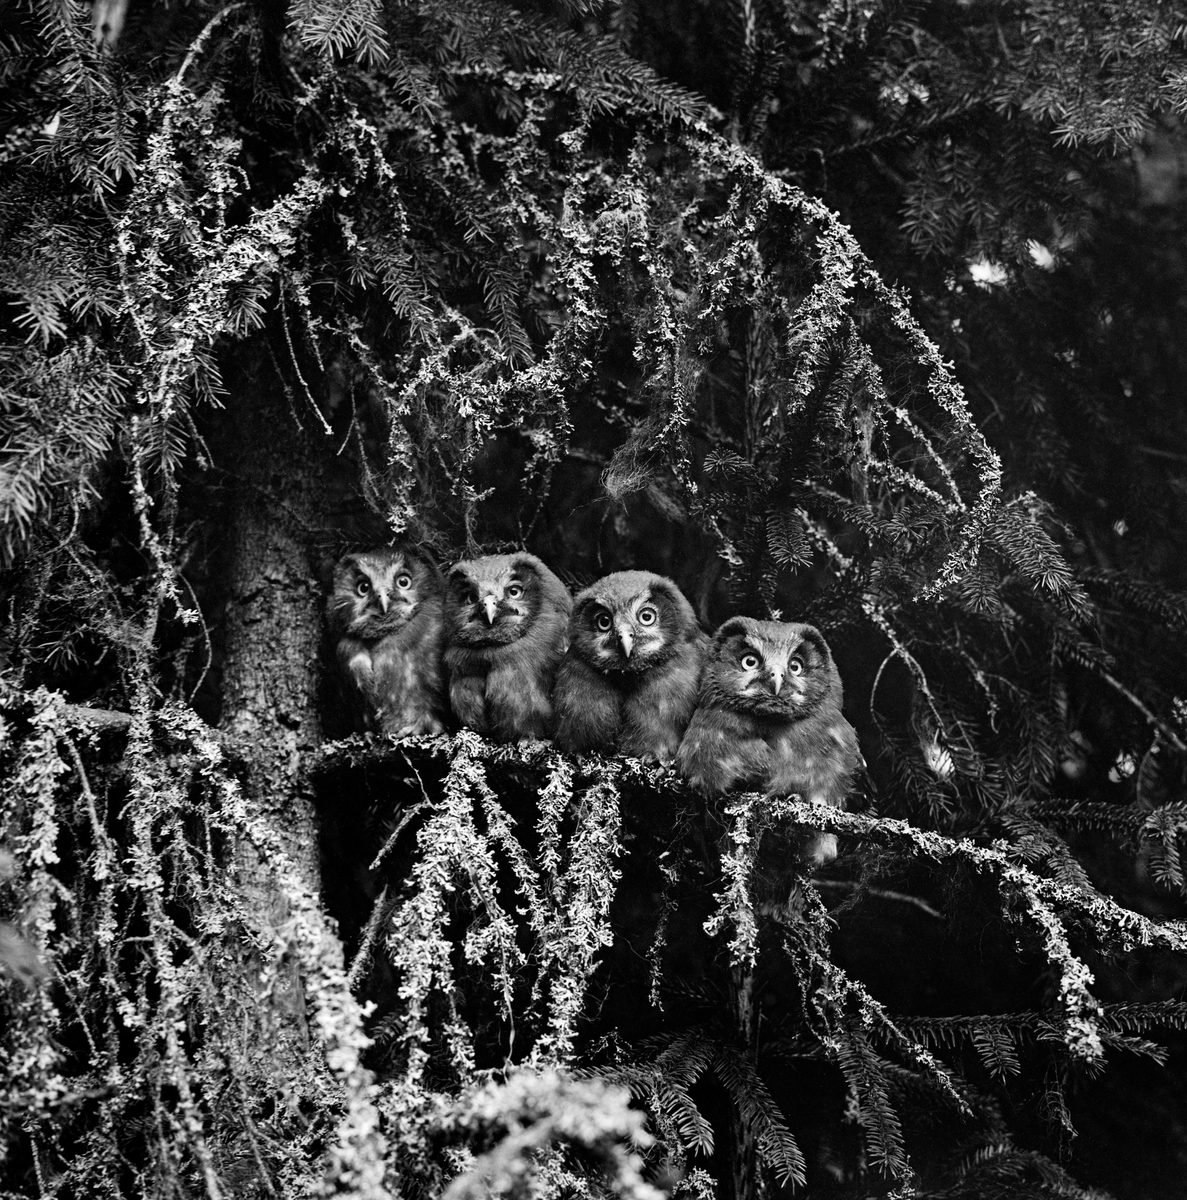 Fire perleugler (Aegolius funereus), fotografert sittende tett inntil hverandre på en lavbegrodd grankvist i Sørskogbygda i Elverum (Hedmark) i 1966. Denne arten hekker i de nordlige delene av Nord-Amerika og lengst nord i Europa, samt i Alpene og lengst nord i de asiatiske delene av Russland.  Den trives i nåleskogen i taigabeltet, gjerne i bartrebestand der det også vokser bjørk eller osp.  Perleugle er en av de vanligste ugleartene i Norge, der denne arten ofte hekker i trær med hull etter hakkespett eller svartspett.  Den lever av smågnagere og småfugl.  Hekkinga starter gjerne i april, og eggene legges med om lag to døgns mellomrom, vanligvis fra tre til sju stykker.  Rugetida er 27-28 dager.  Ungene blir flygedyktige etter cirka en måned på reiret.  Størrelsen på kullene varierer med tilgangen på smågnagere. Perleugle.